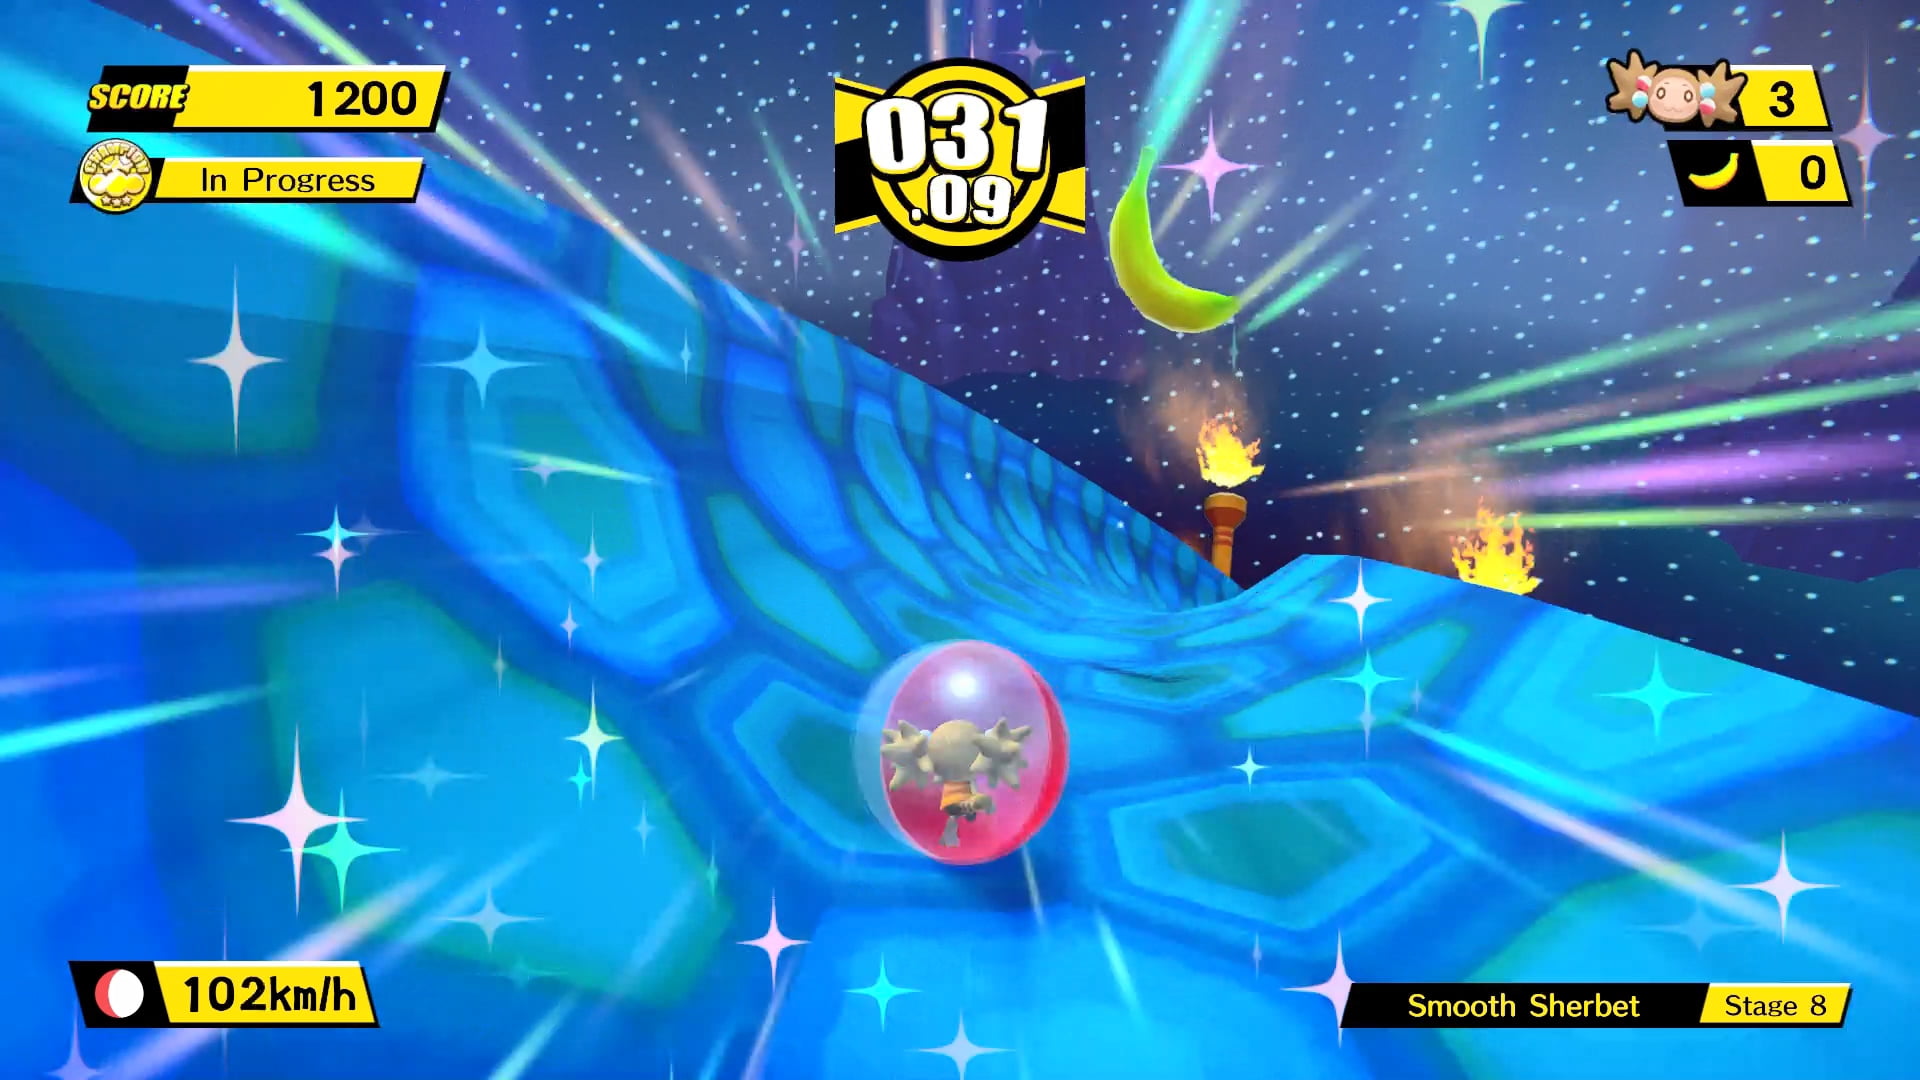 Jogo Super Monkey Ball Banana Blitz HD Nintendo Switch em Promoção